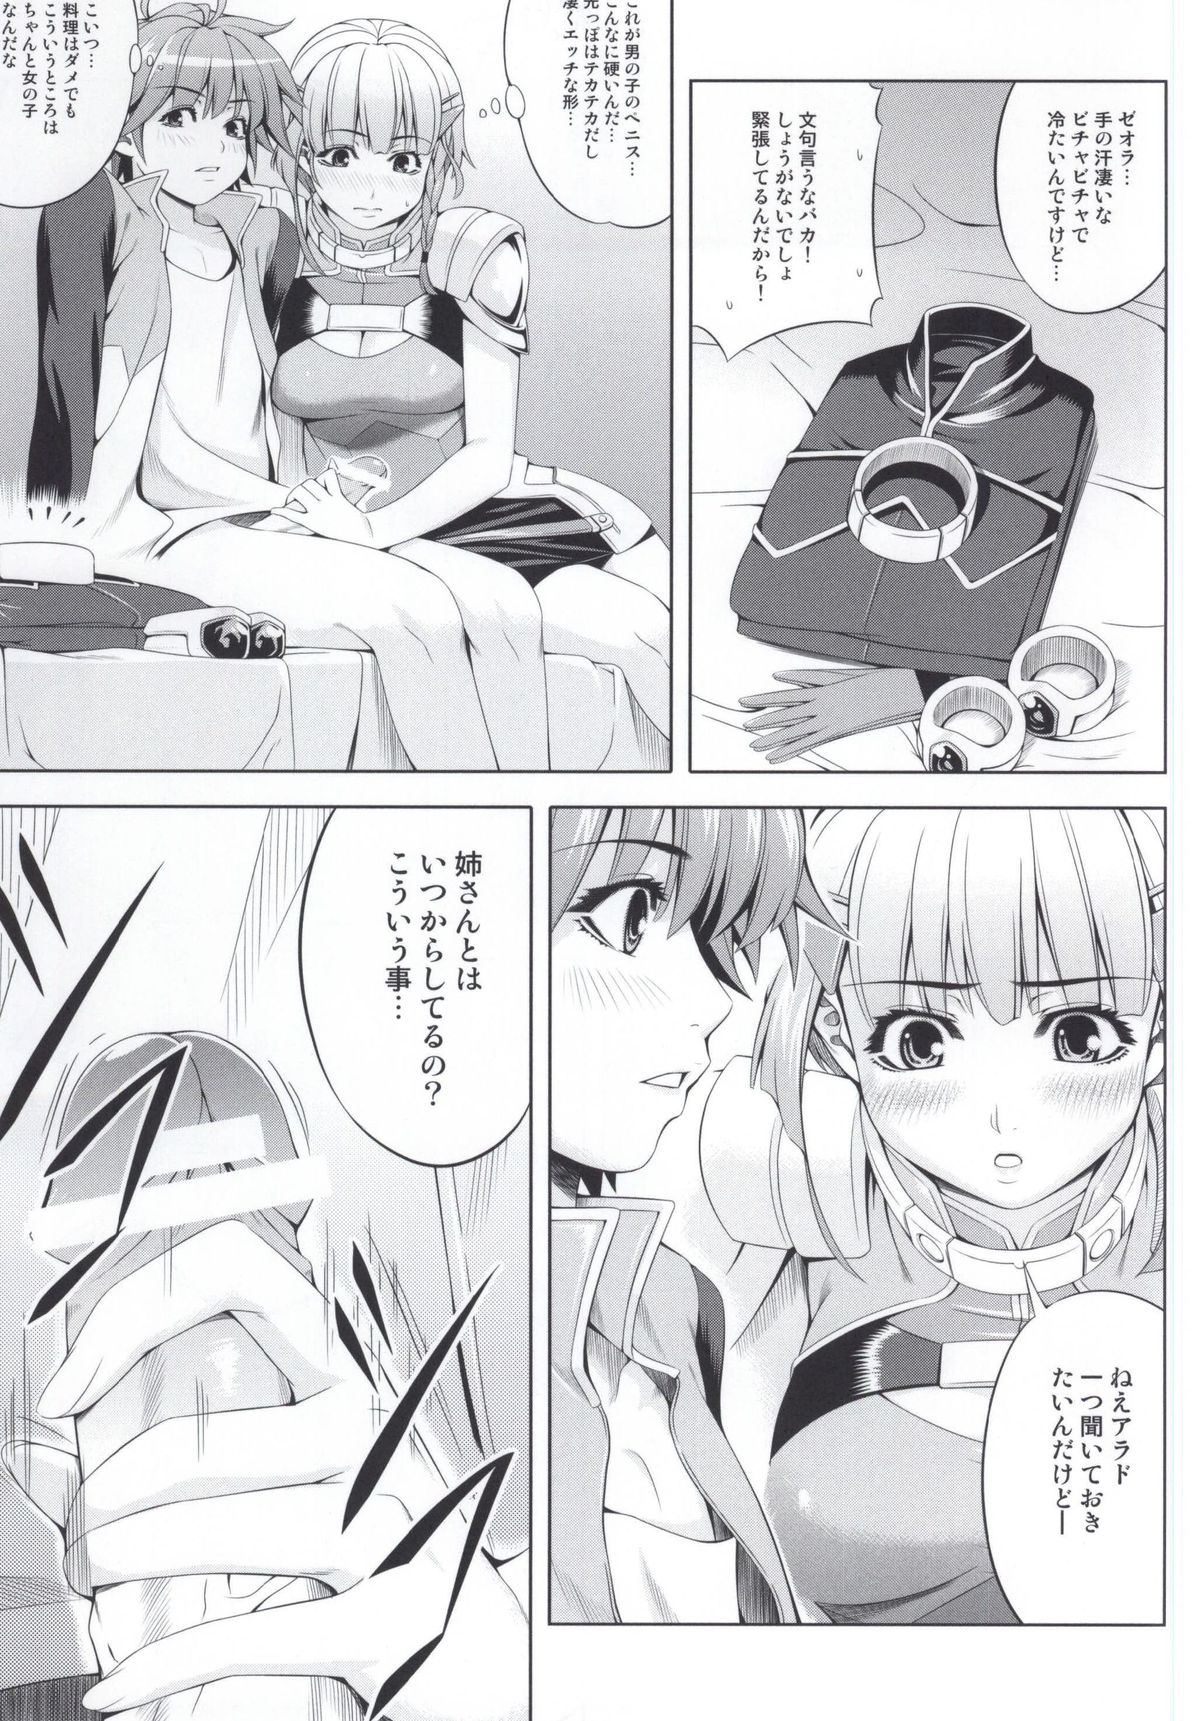 (SC61) [Kirin no Chisato (Chisato Kirin)] Seolla of book ~Episode1~ (Super Robot Wars) page 6 full